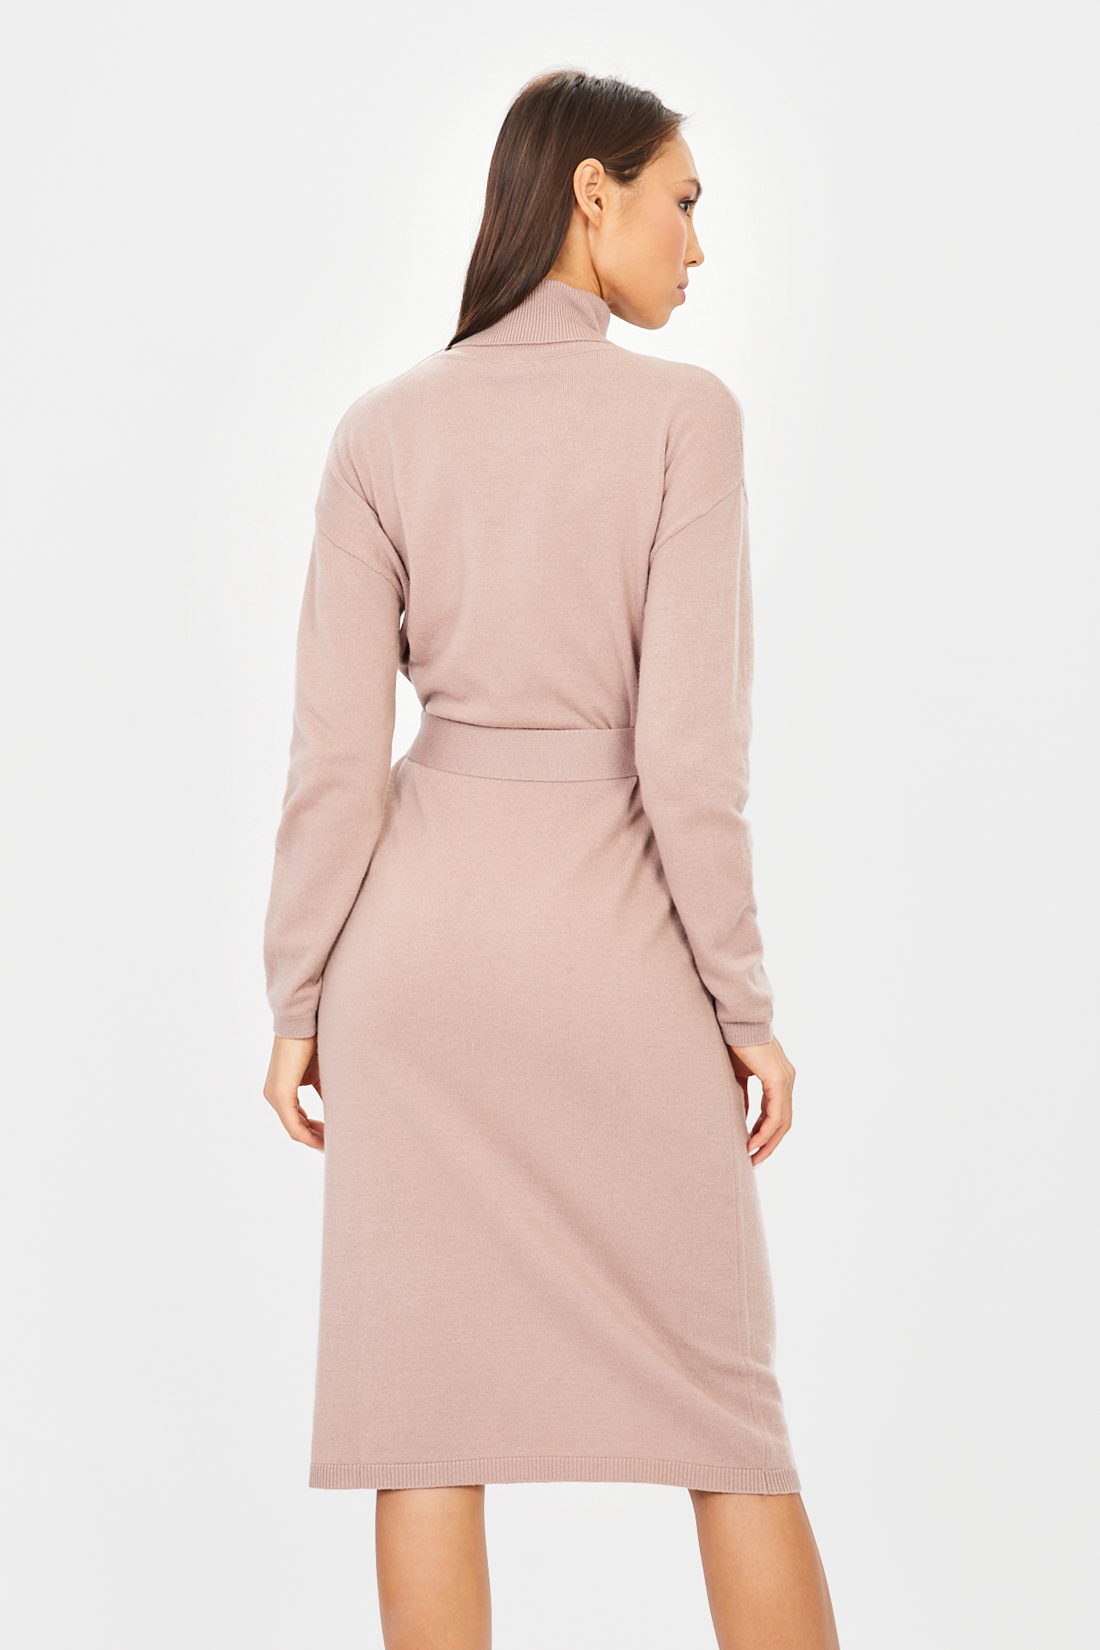 Платье (арт. baon B451505), размер L, цвет розовый Платье (арт. baon B451505) - фото 2